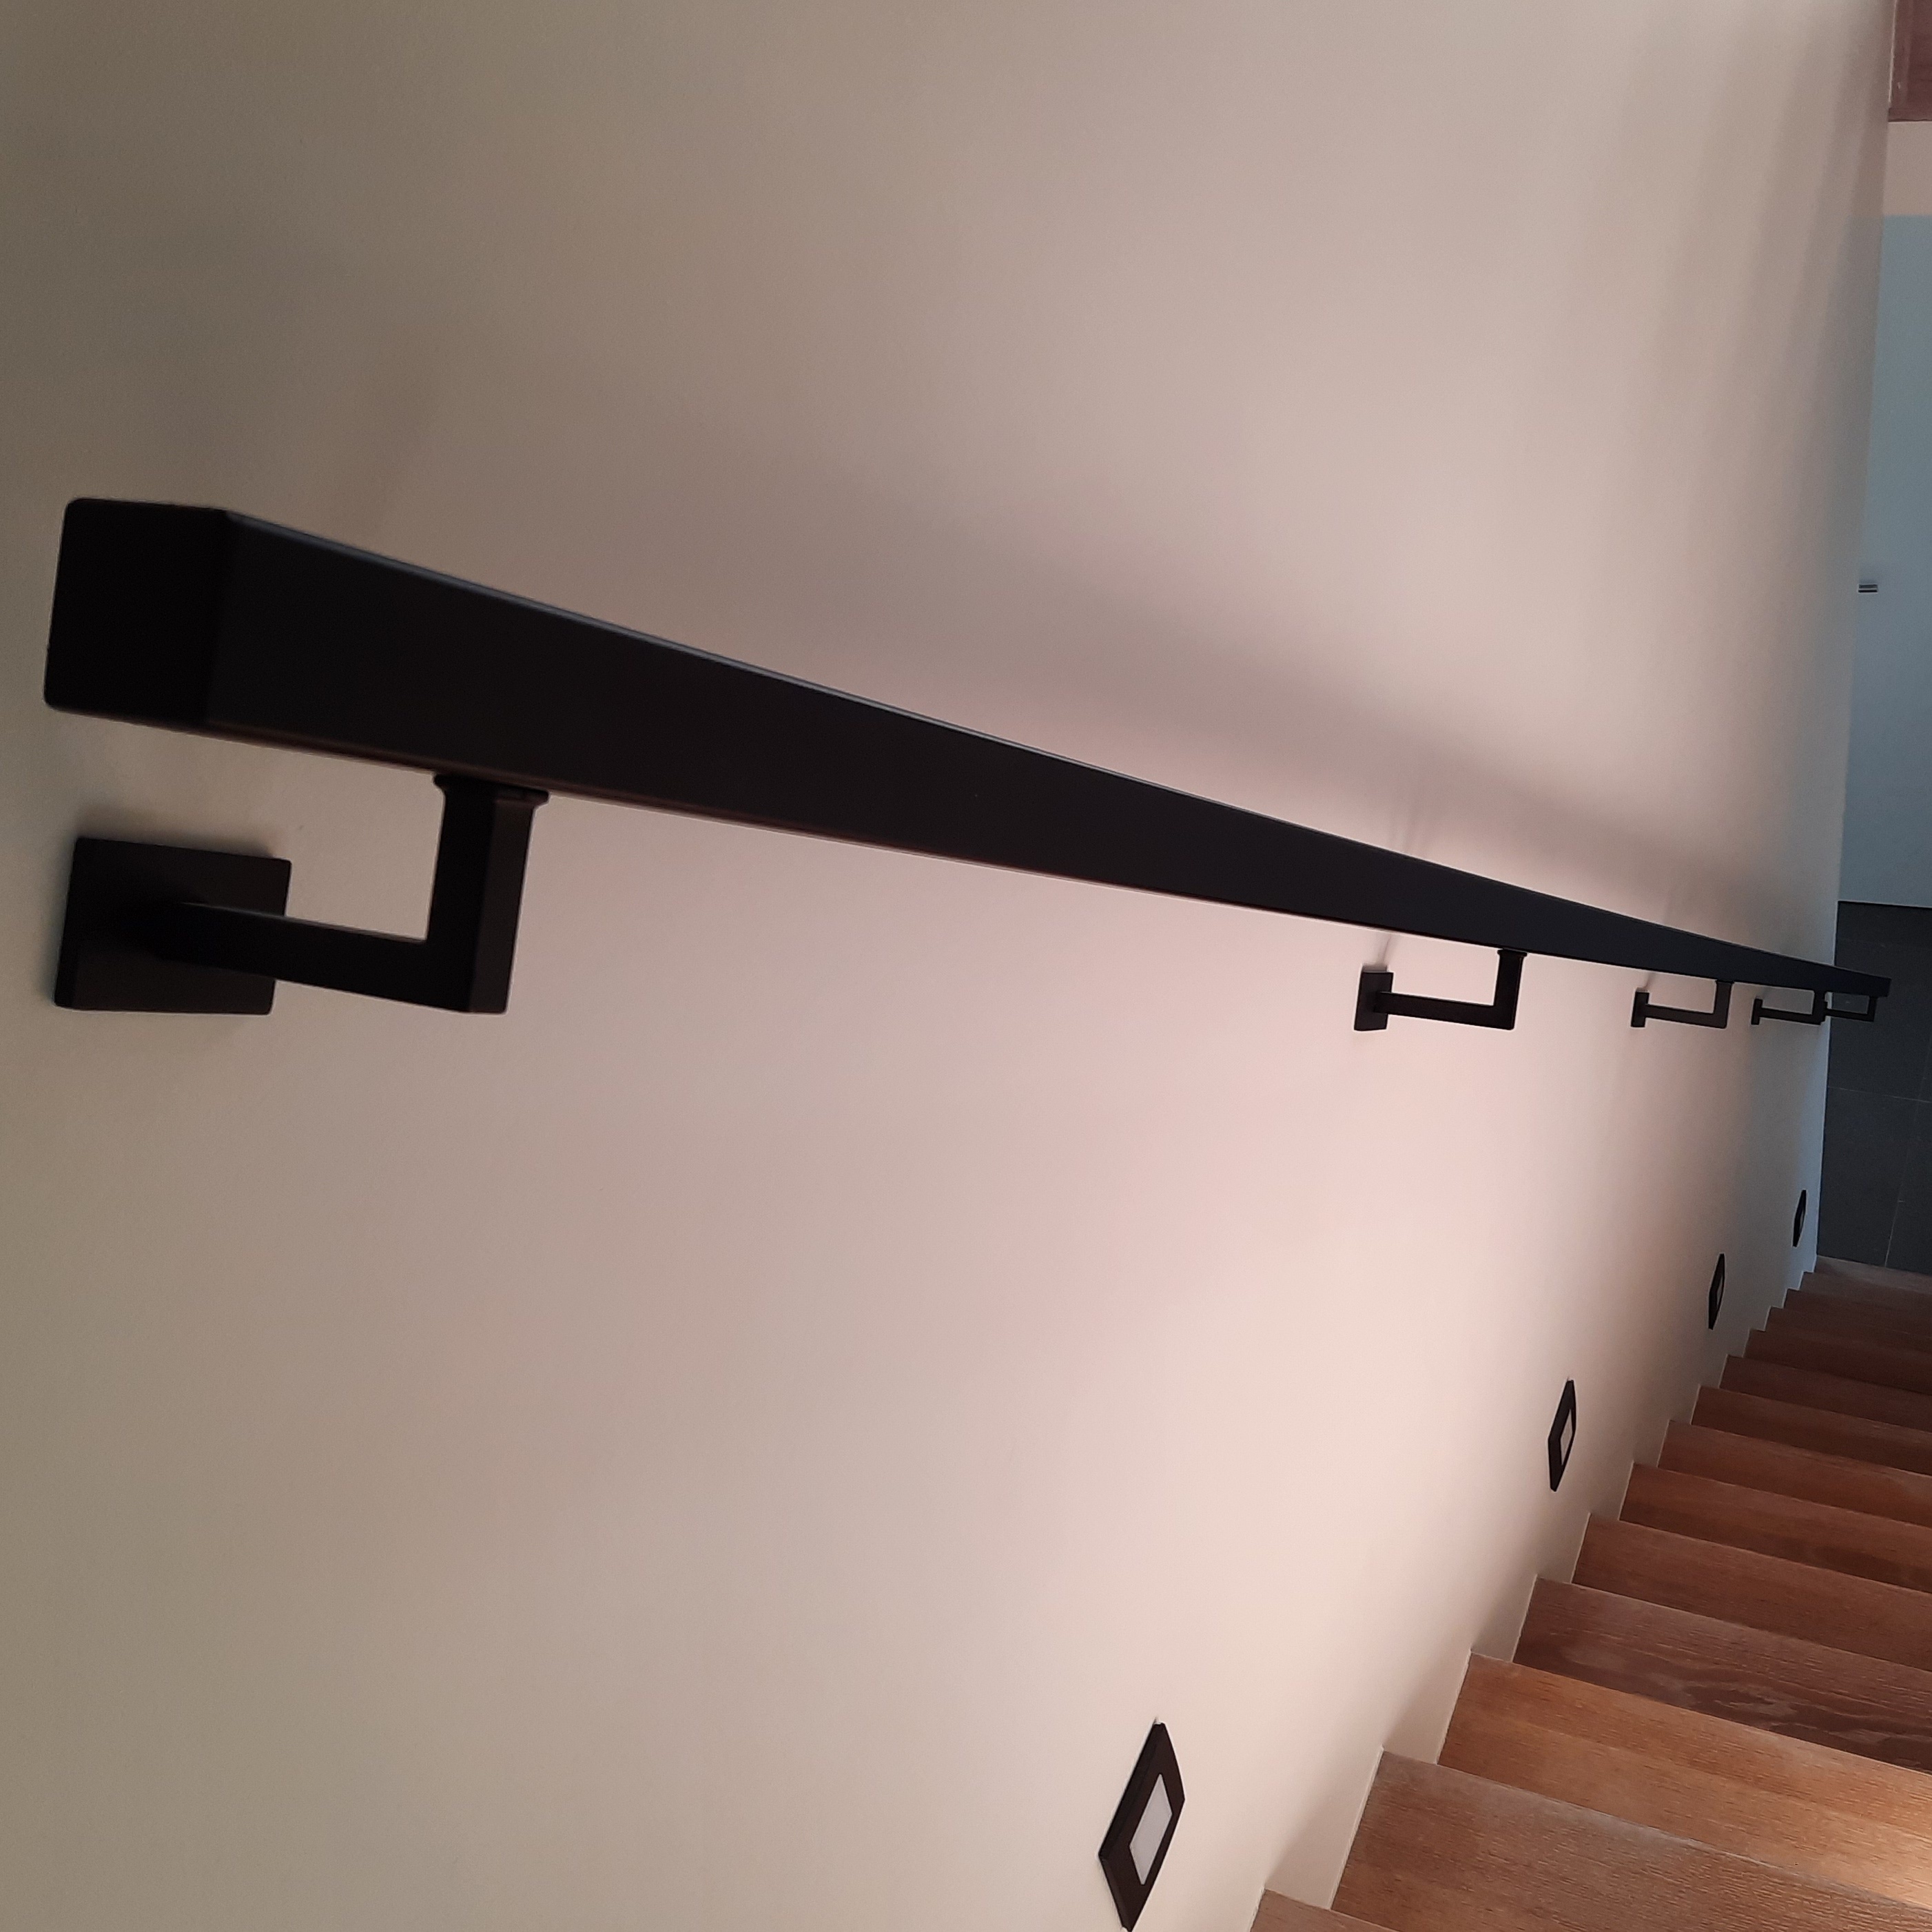  Handlauf schwarz beschichtet viereckig 40x40 Modell 3 - Rechteckige Treppengeländer - Treppenhandlauf mit schwarzer Pulverbeschichtung RAL 9005